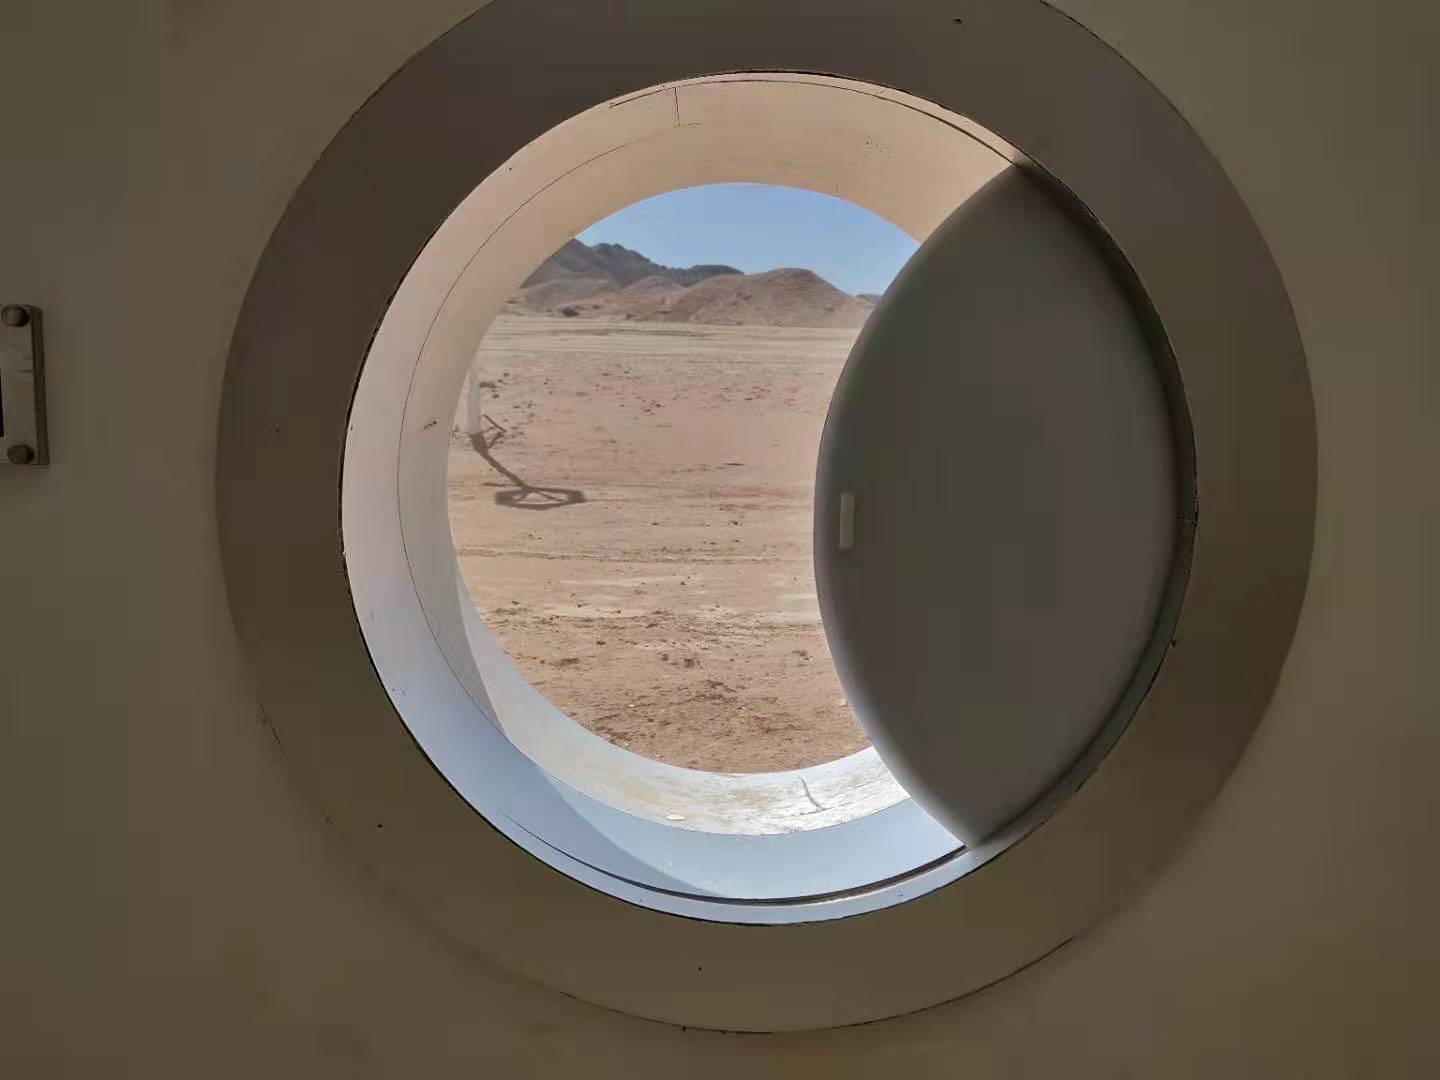 Mars Base-Camp In The Gobi